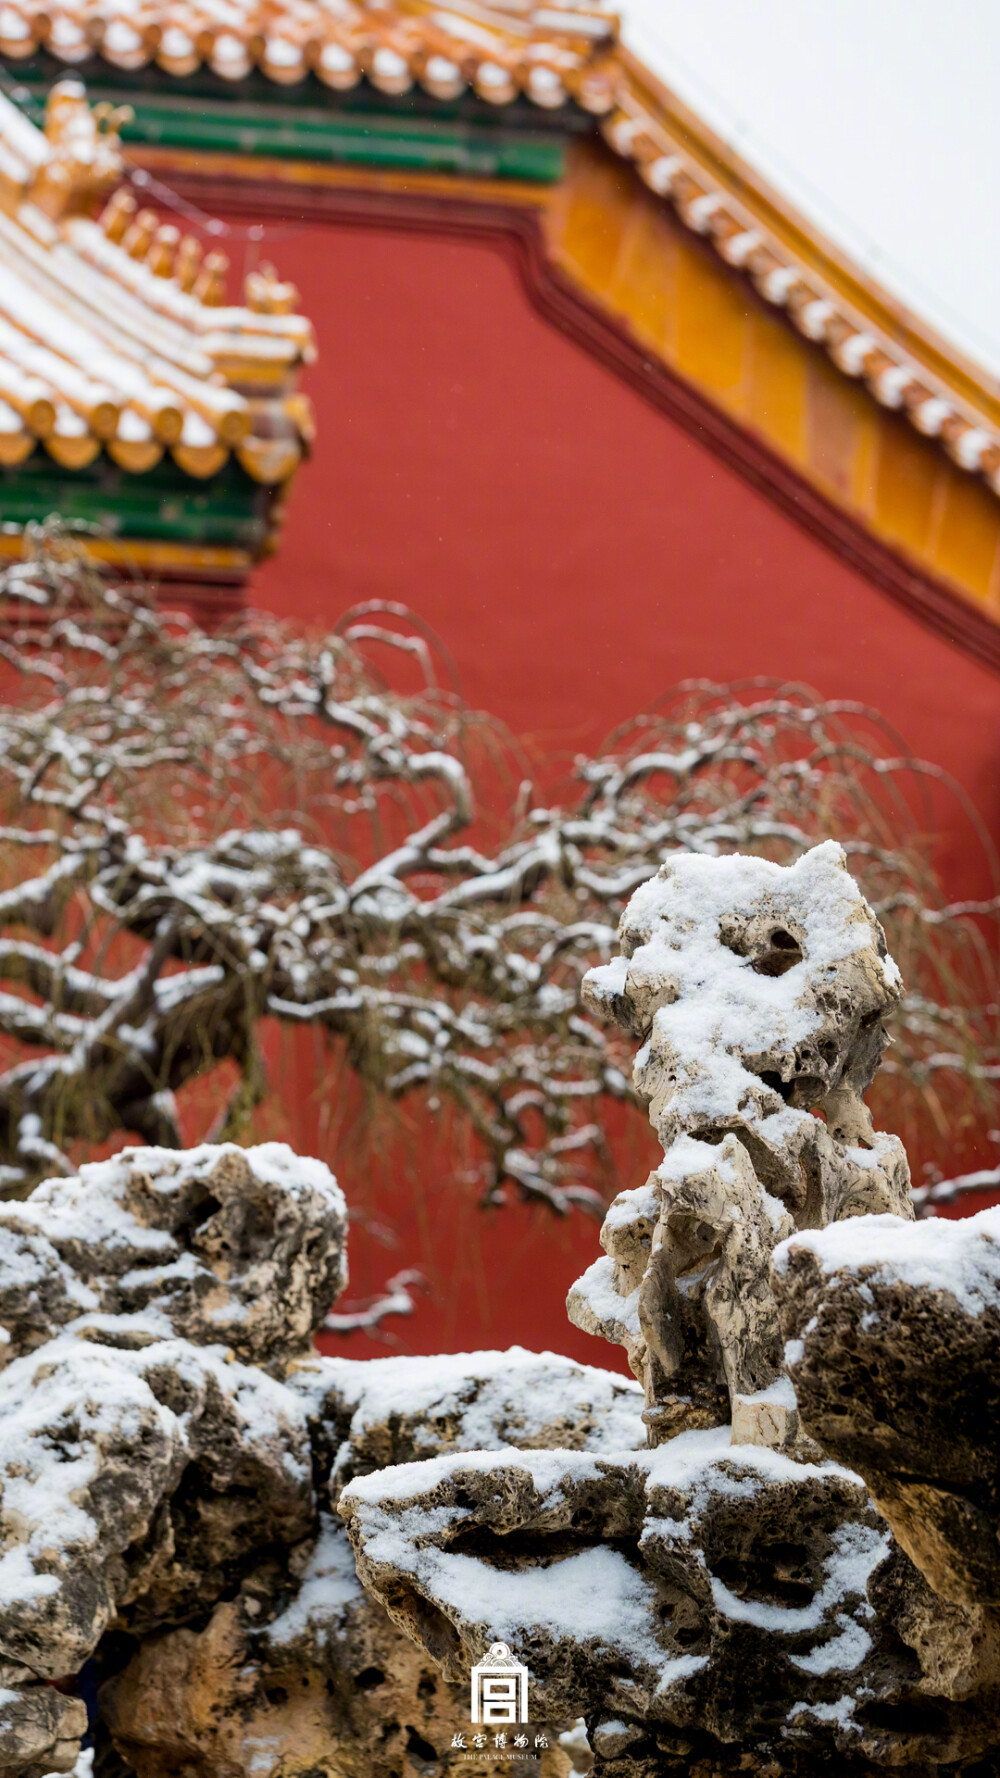 紫禁城【己亥•再雪】“石上新雪盖旧雪，城深草寒连木寒” 照片取自@故宫博物院